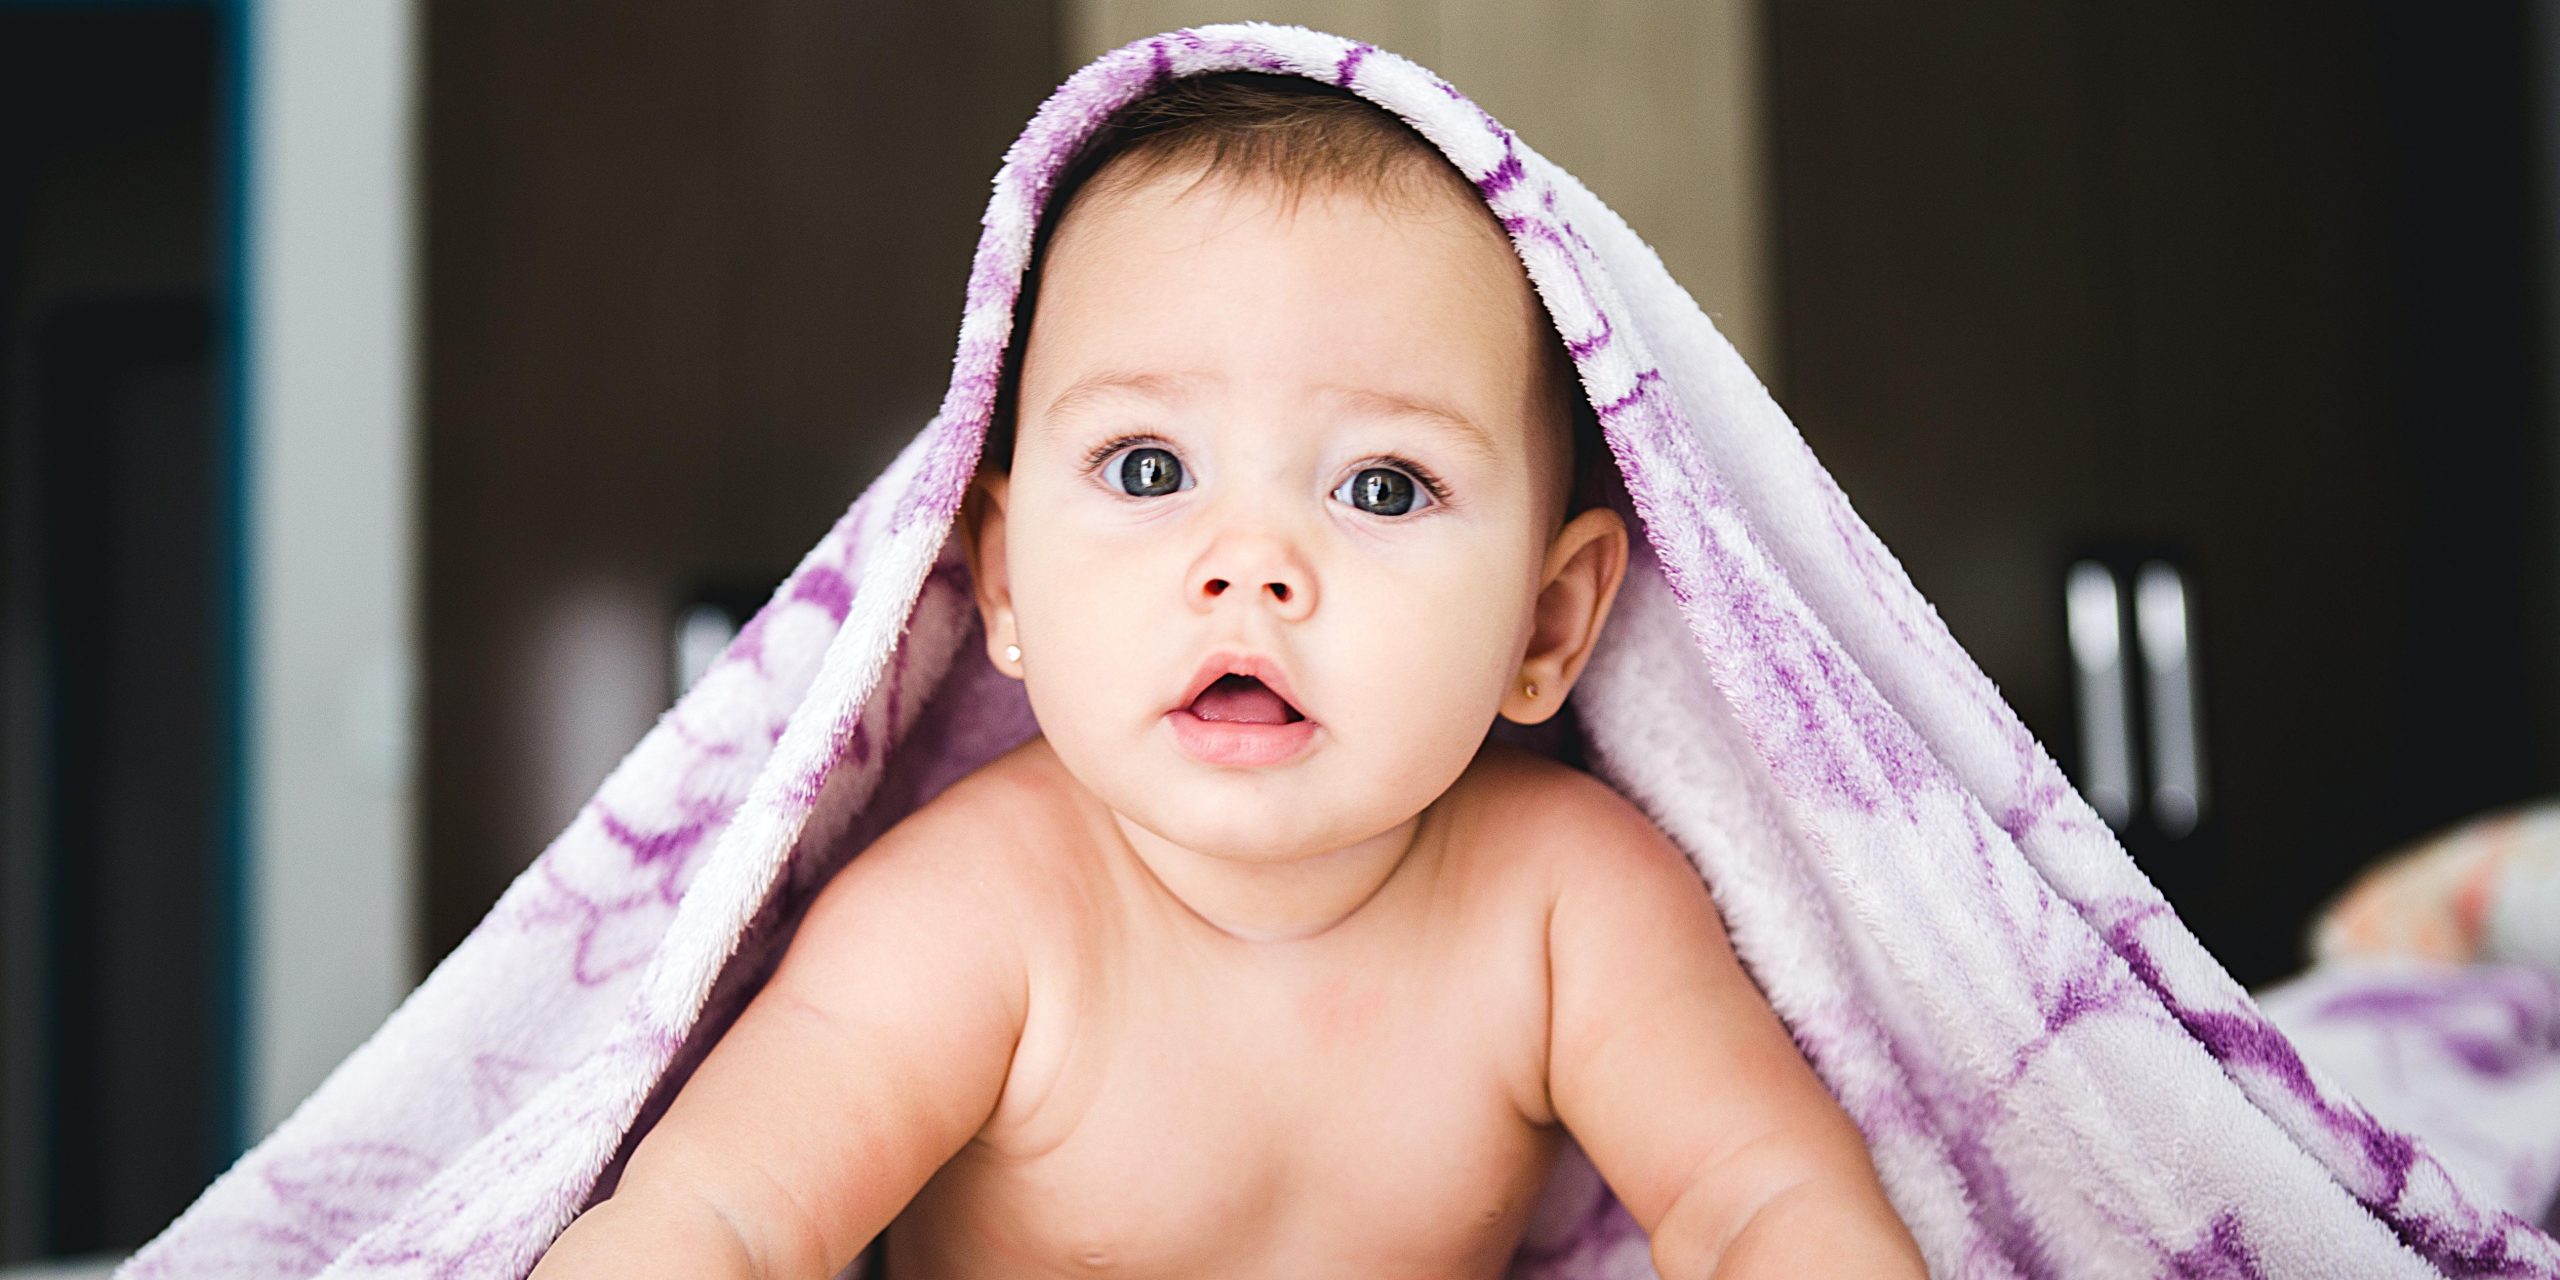 Enfamil Confort: la leche infantil que alivia los trastornos digestivos  leves de los bebés